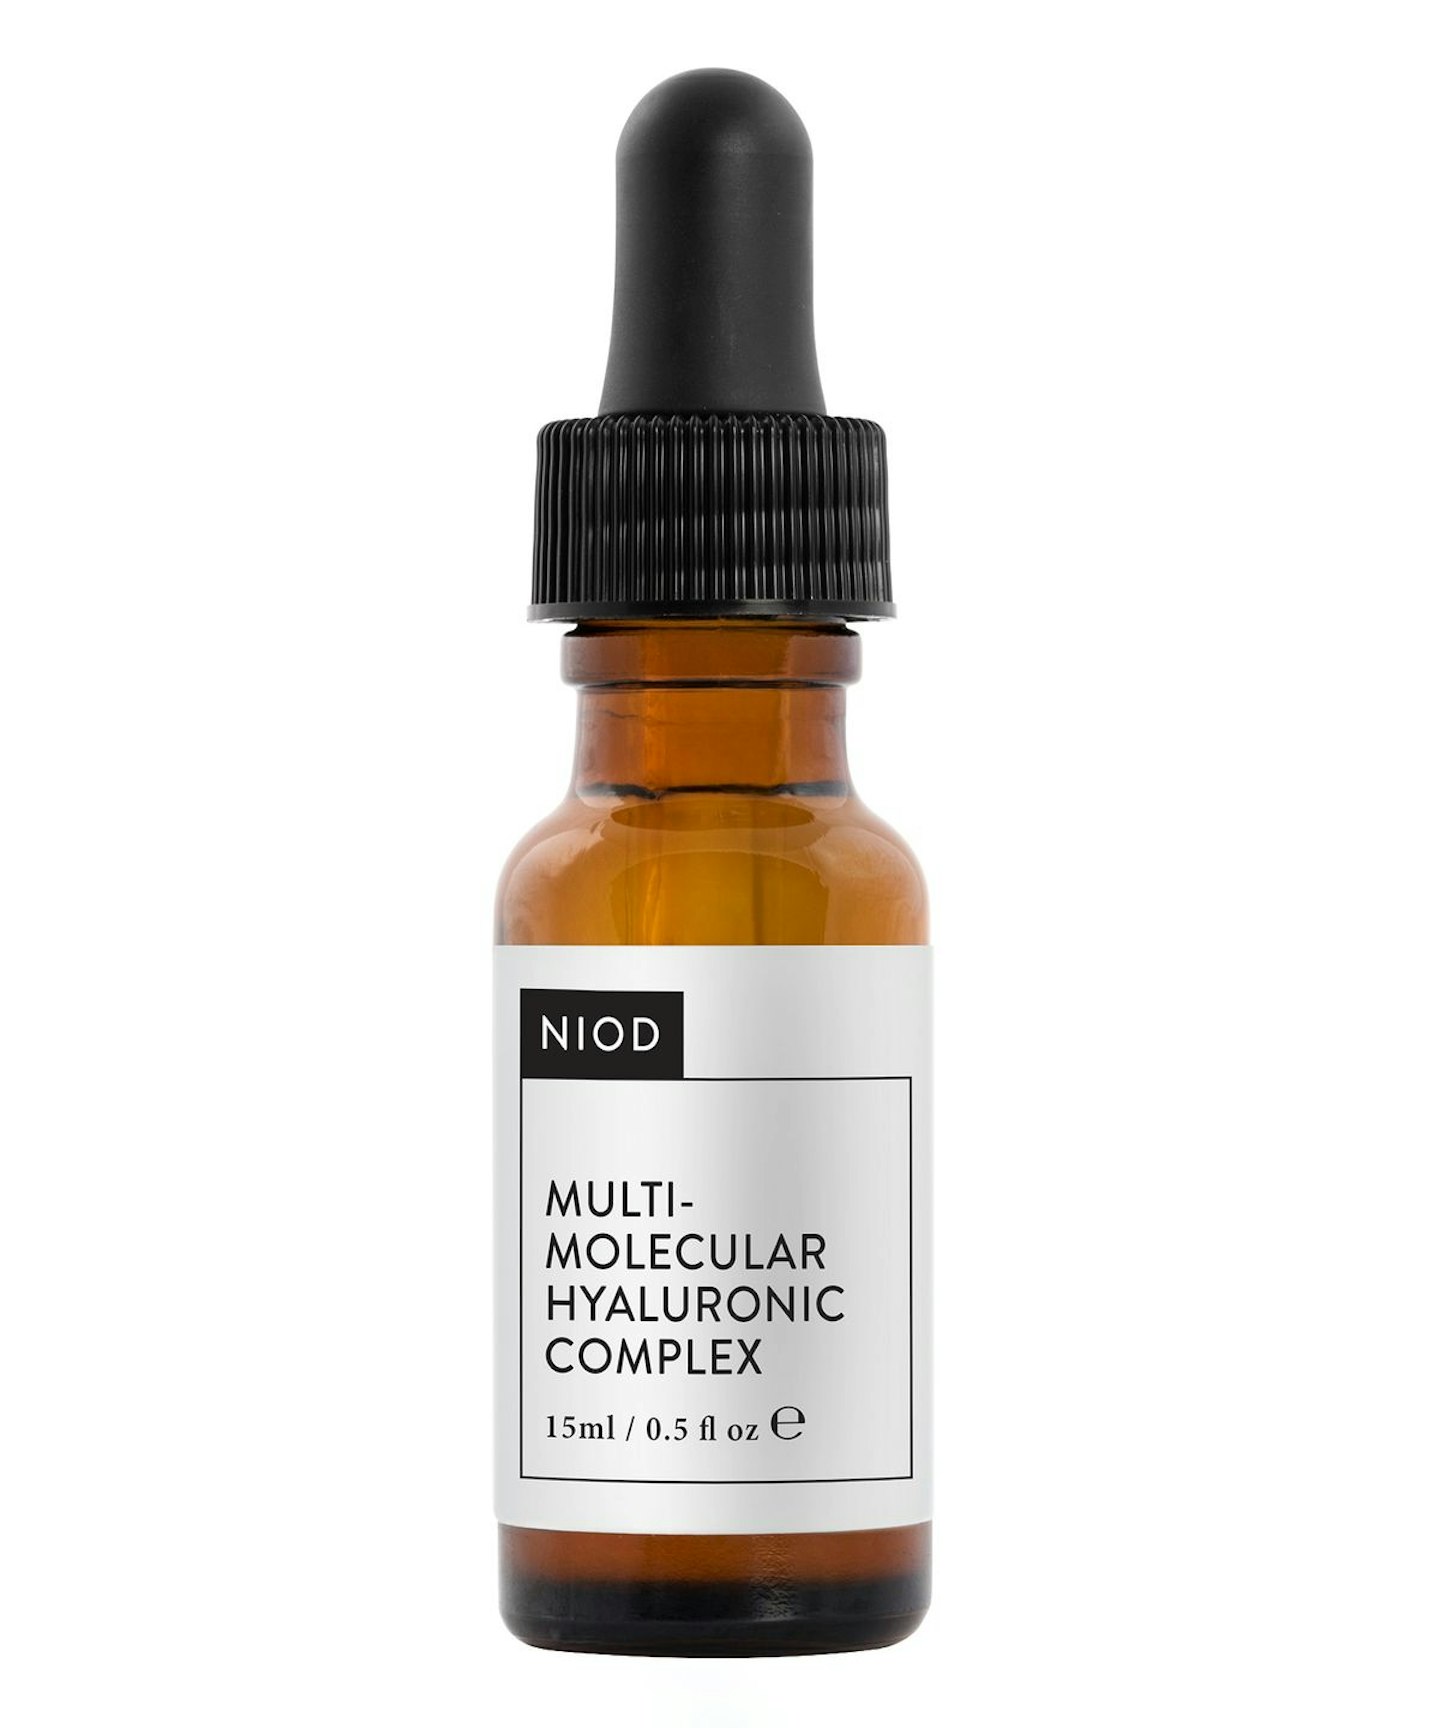 NIOD Multi Molecular Hyaluronic Complex, £25